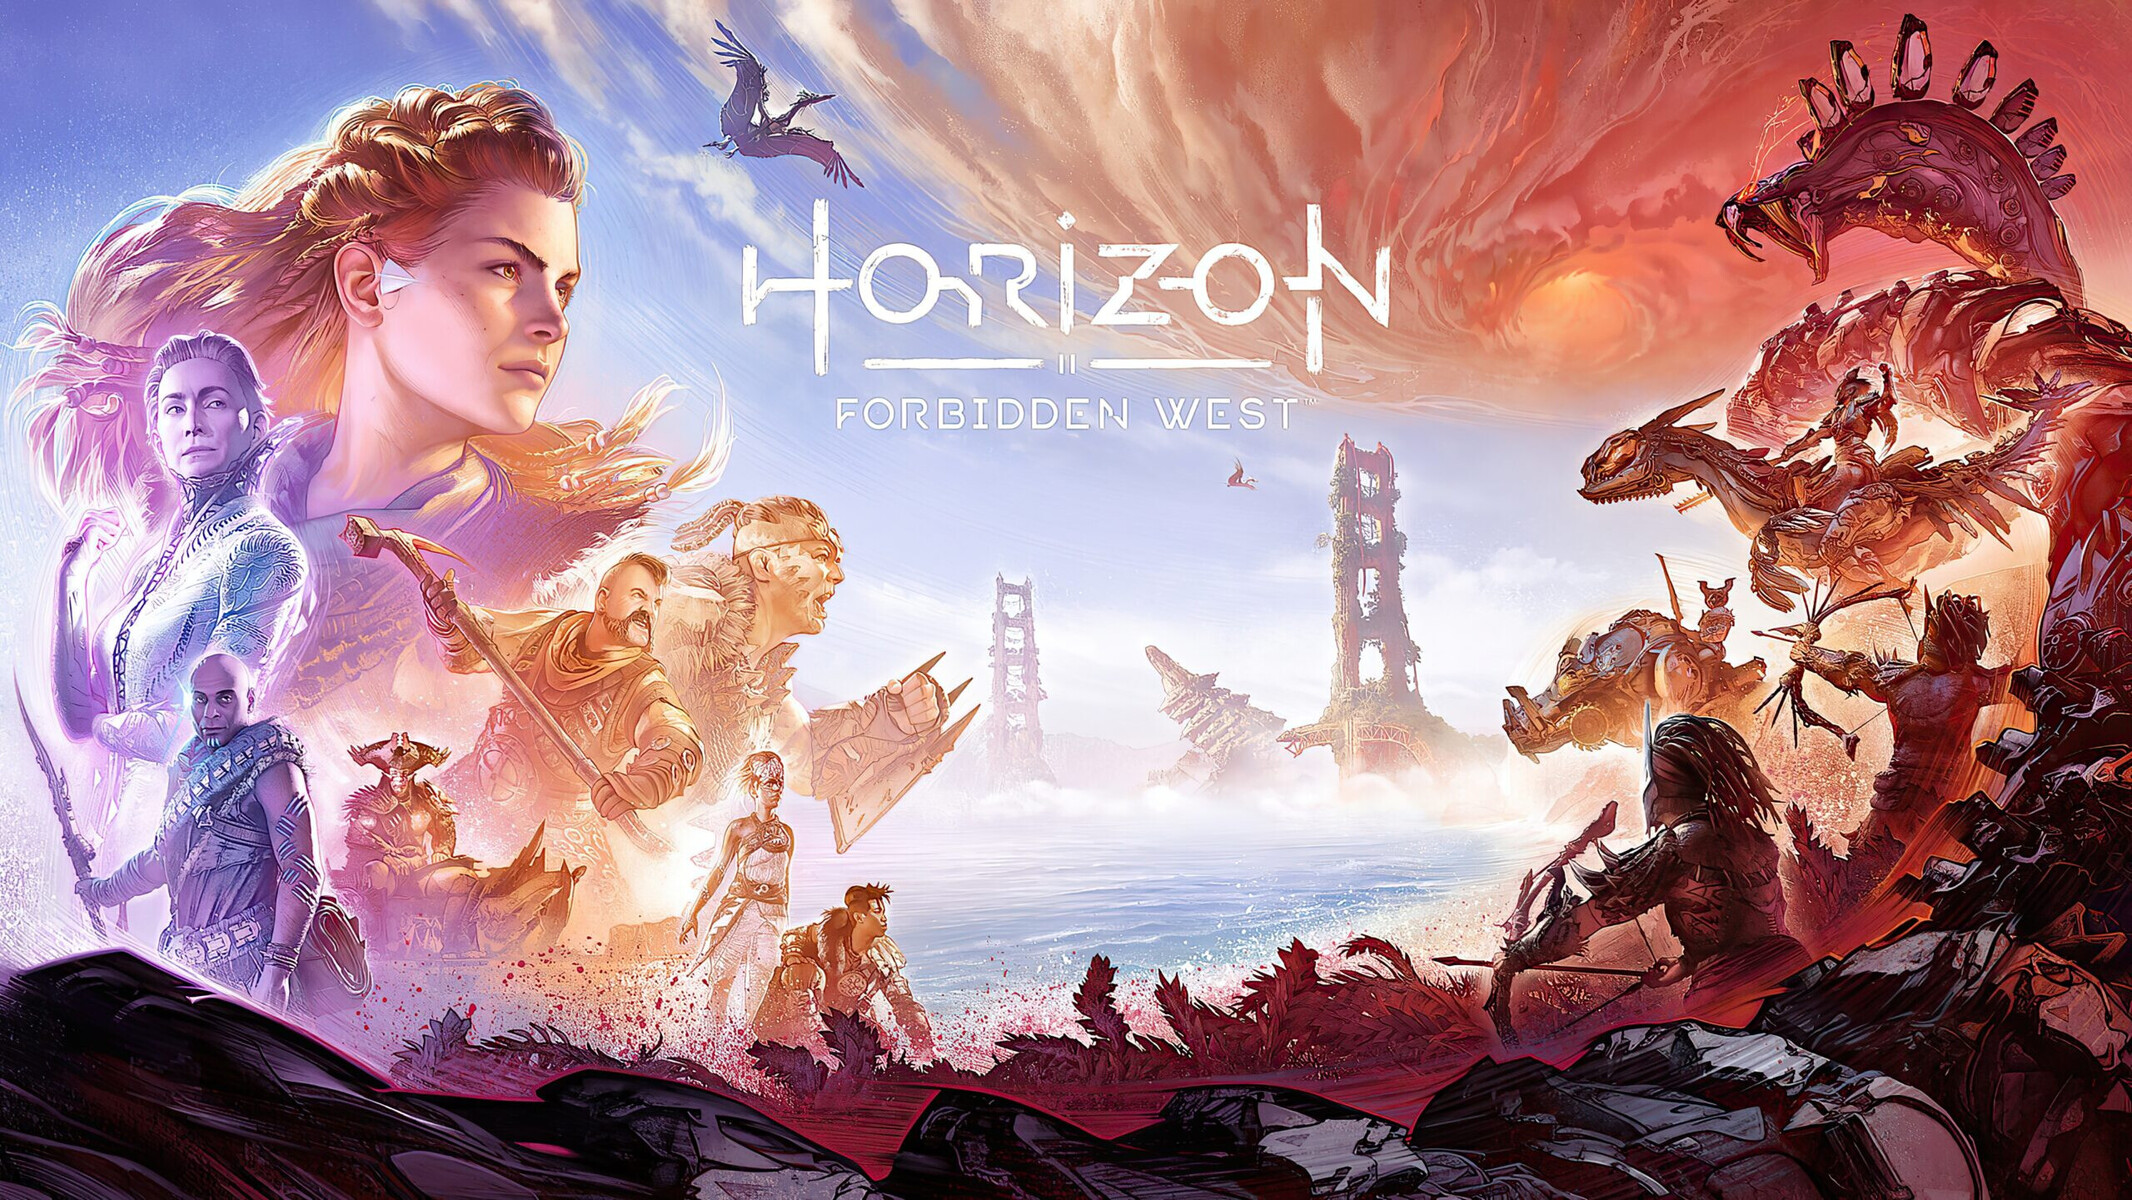 BREAKING: Horizon Forbidden West Coming to Steam! #pcgaming #gaming  #horizonforbiddenwest 